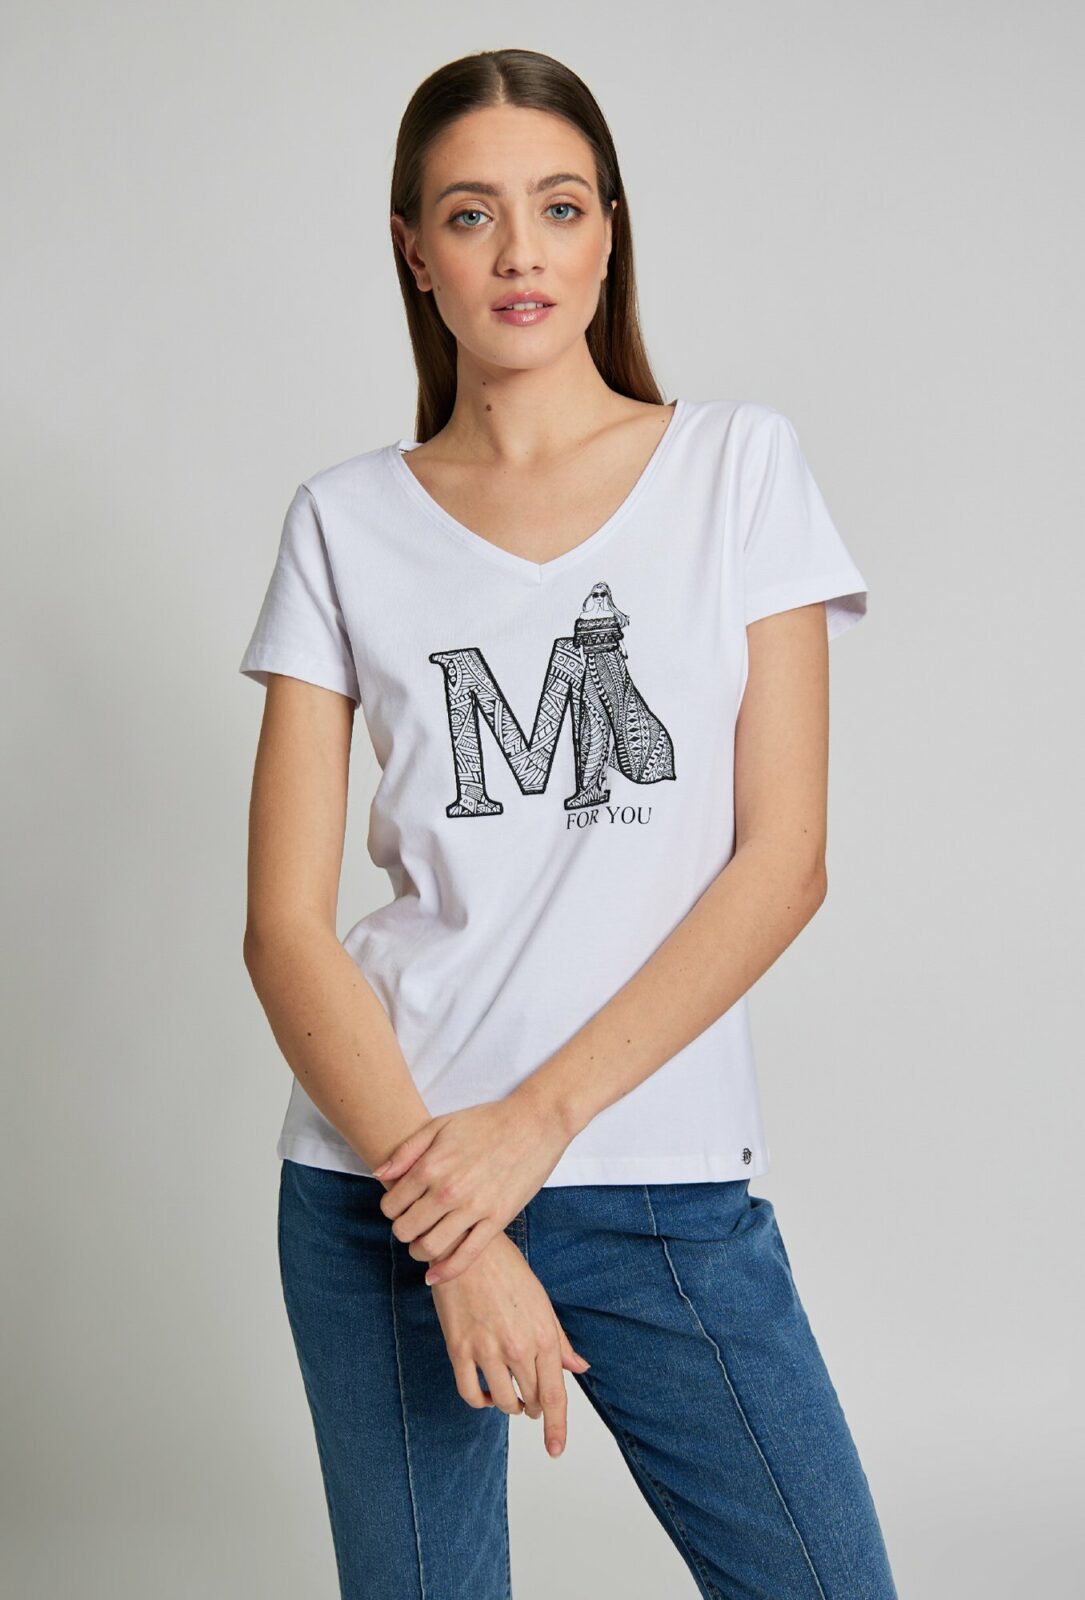 MONNARI Woman's T-Shirts T-Shirt